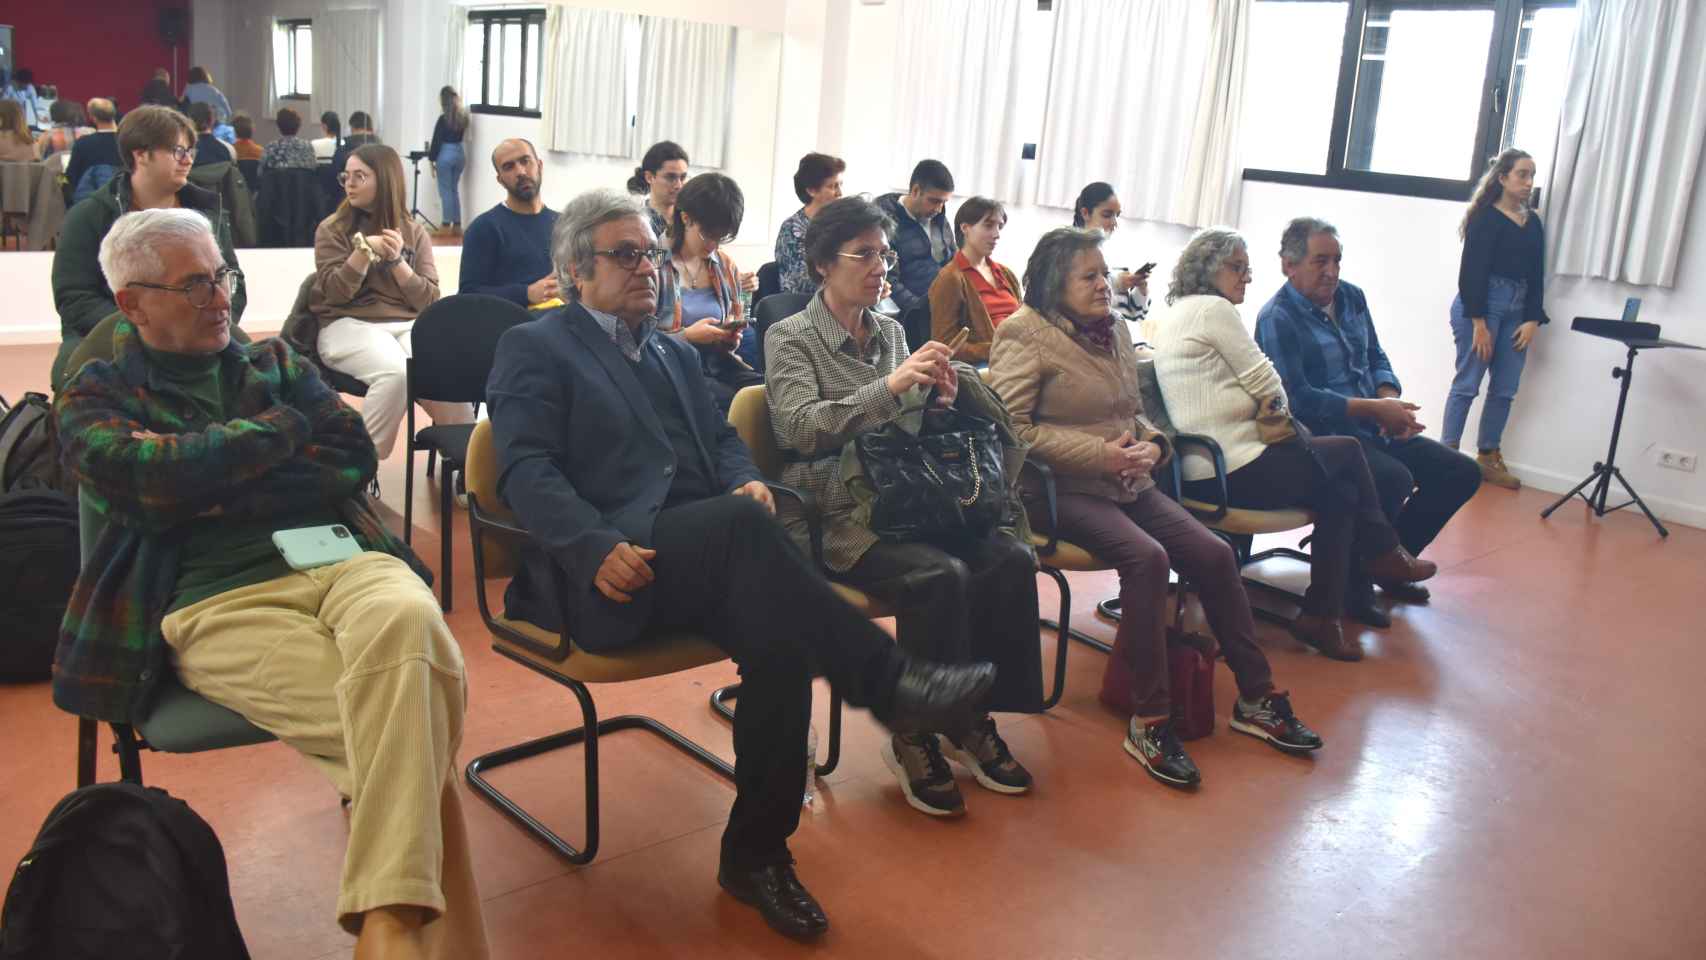 Nutrido grupo de amigos y familiares que presenciaron la exposición en el Conservatorio Superior de Música de Castilla y León